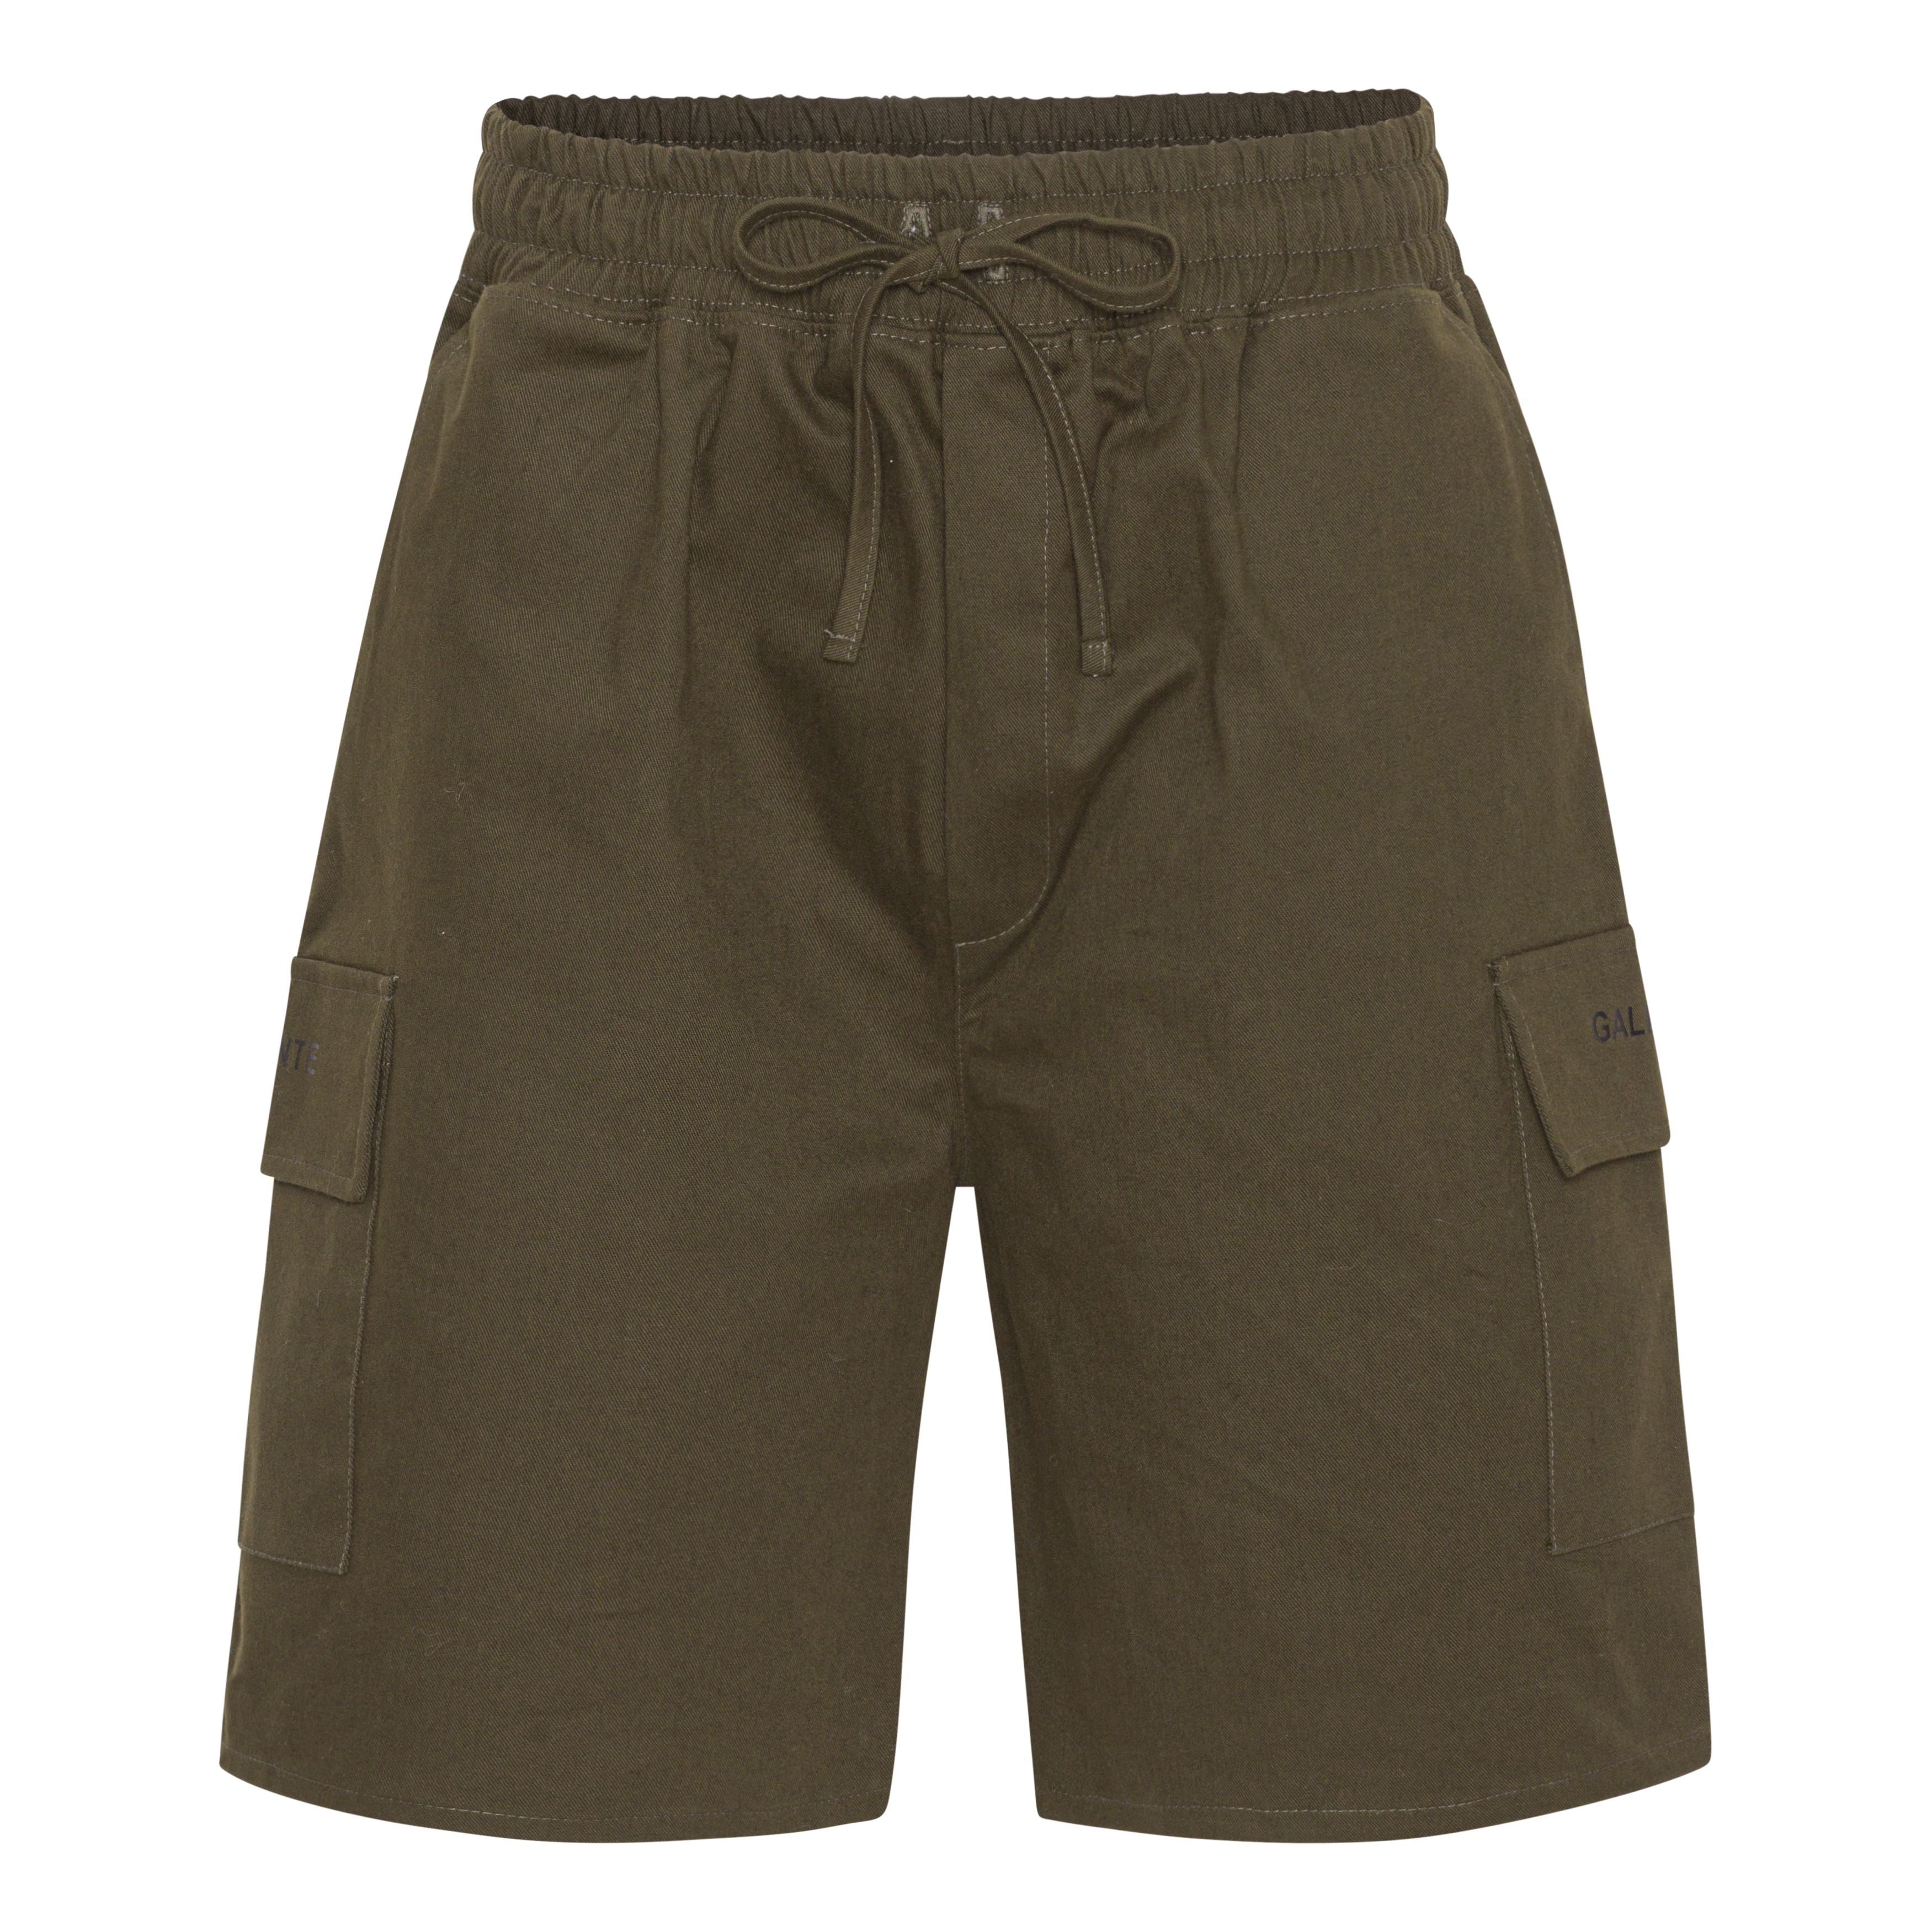 Army cargo shorts